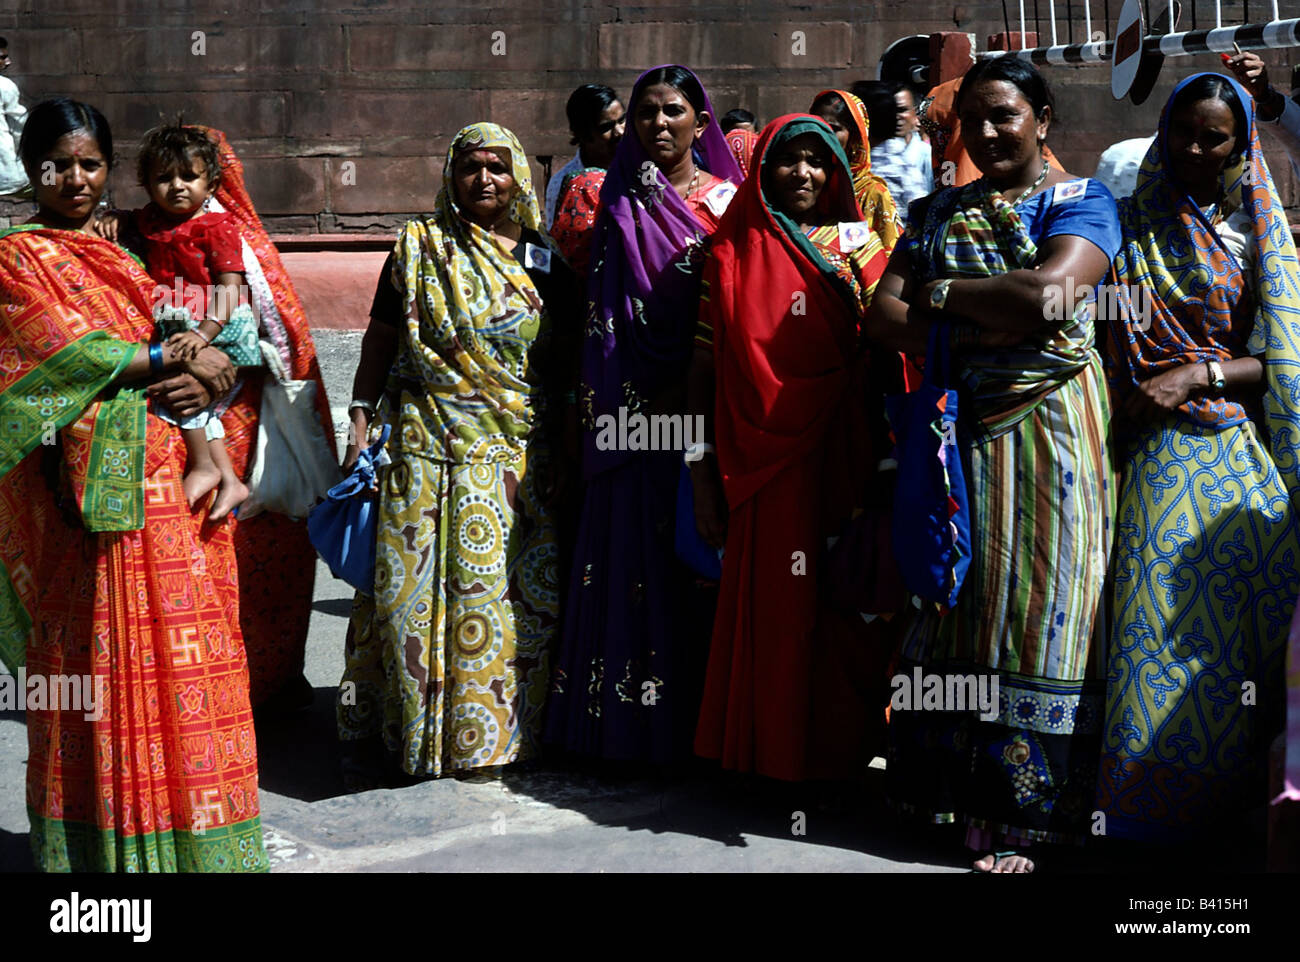 Geografía / viajes, India, gente, grupo de mujeres indias, ropa de colores, sari, , Foto de stock